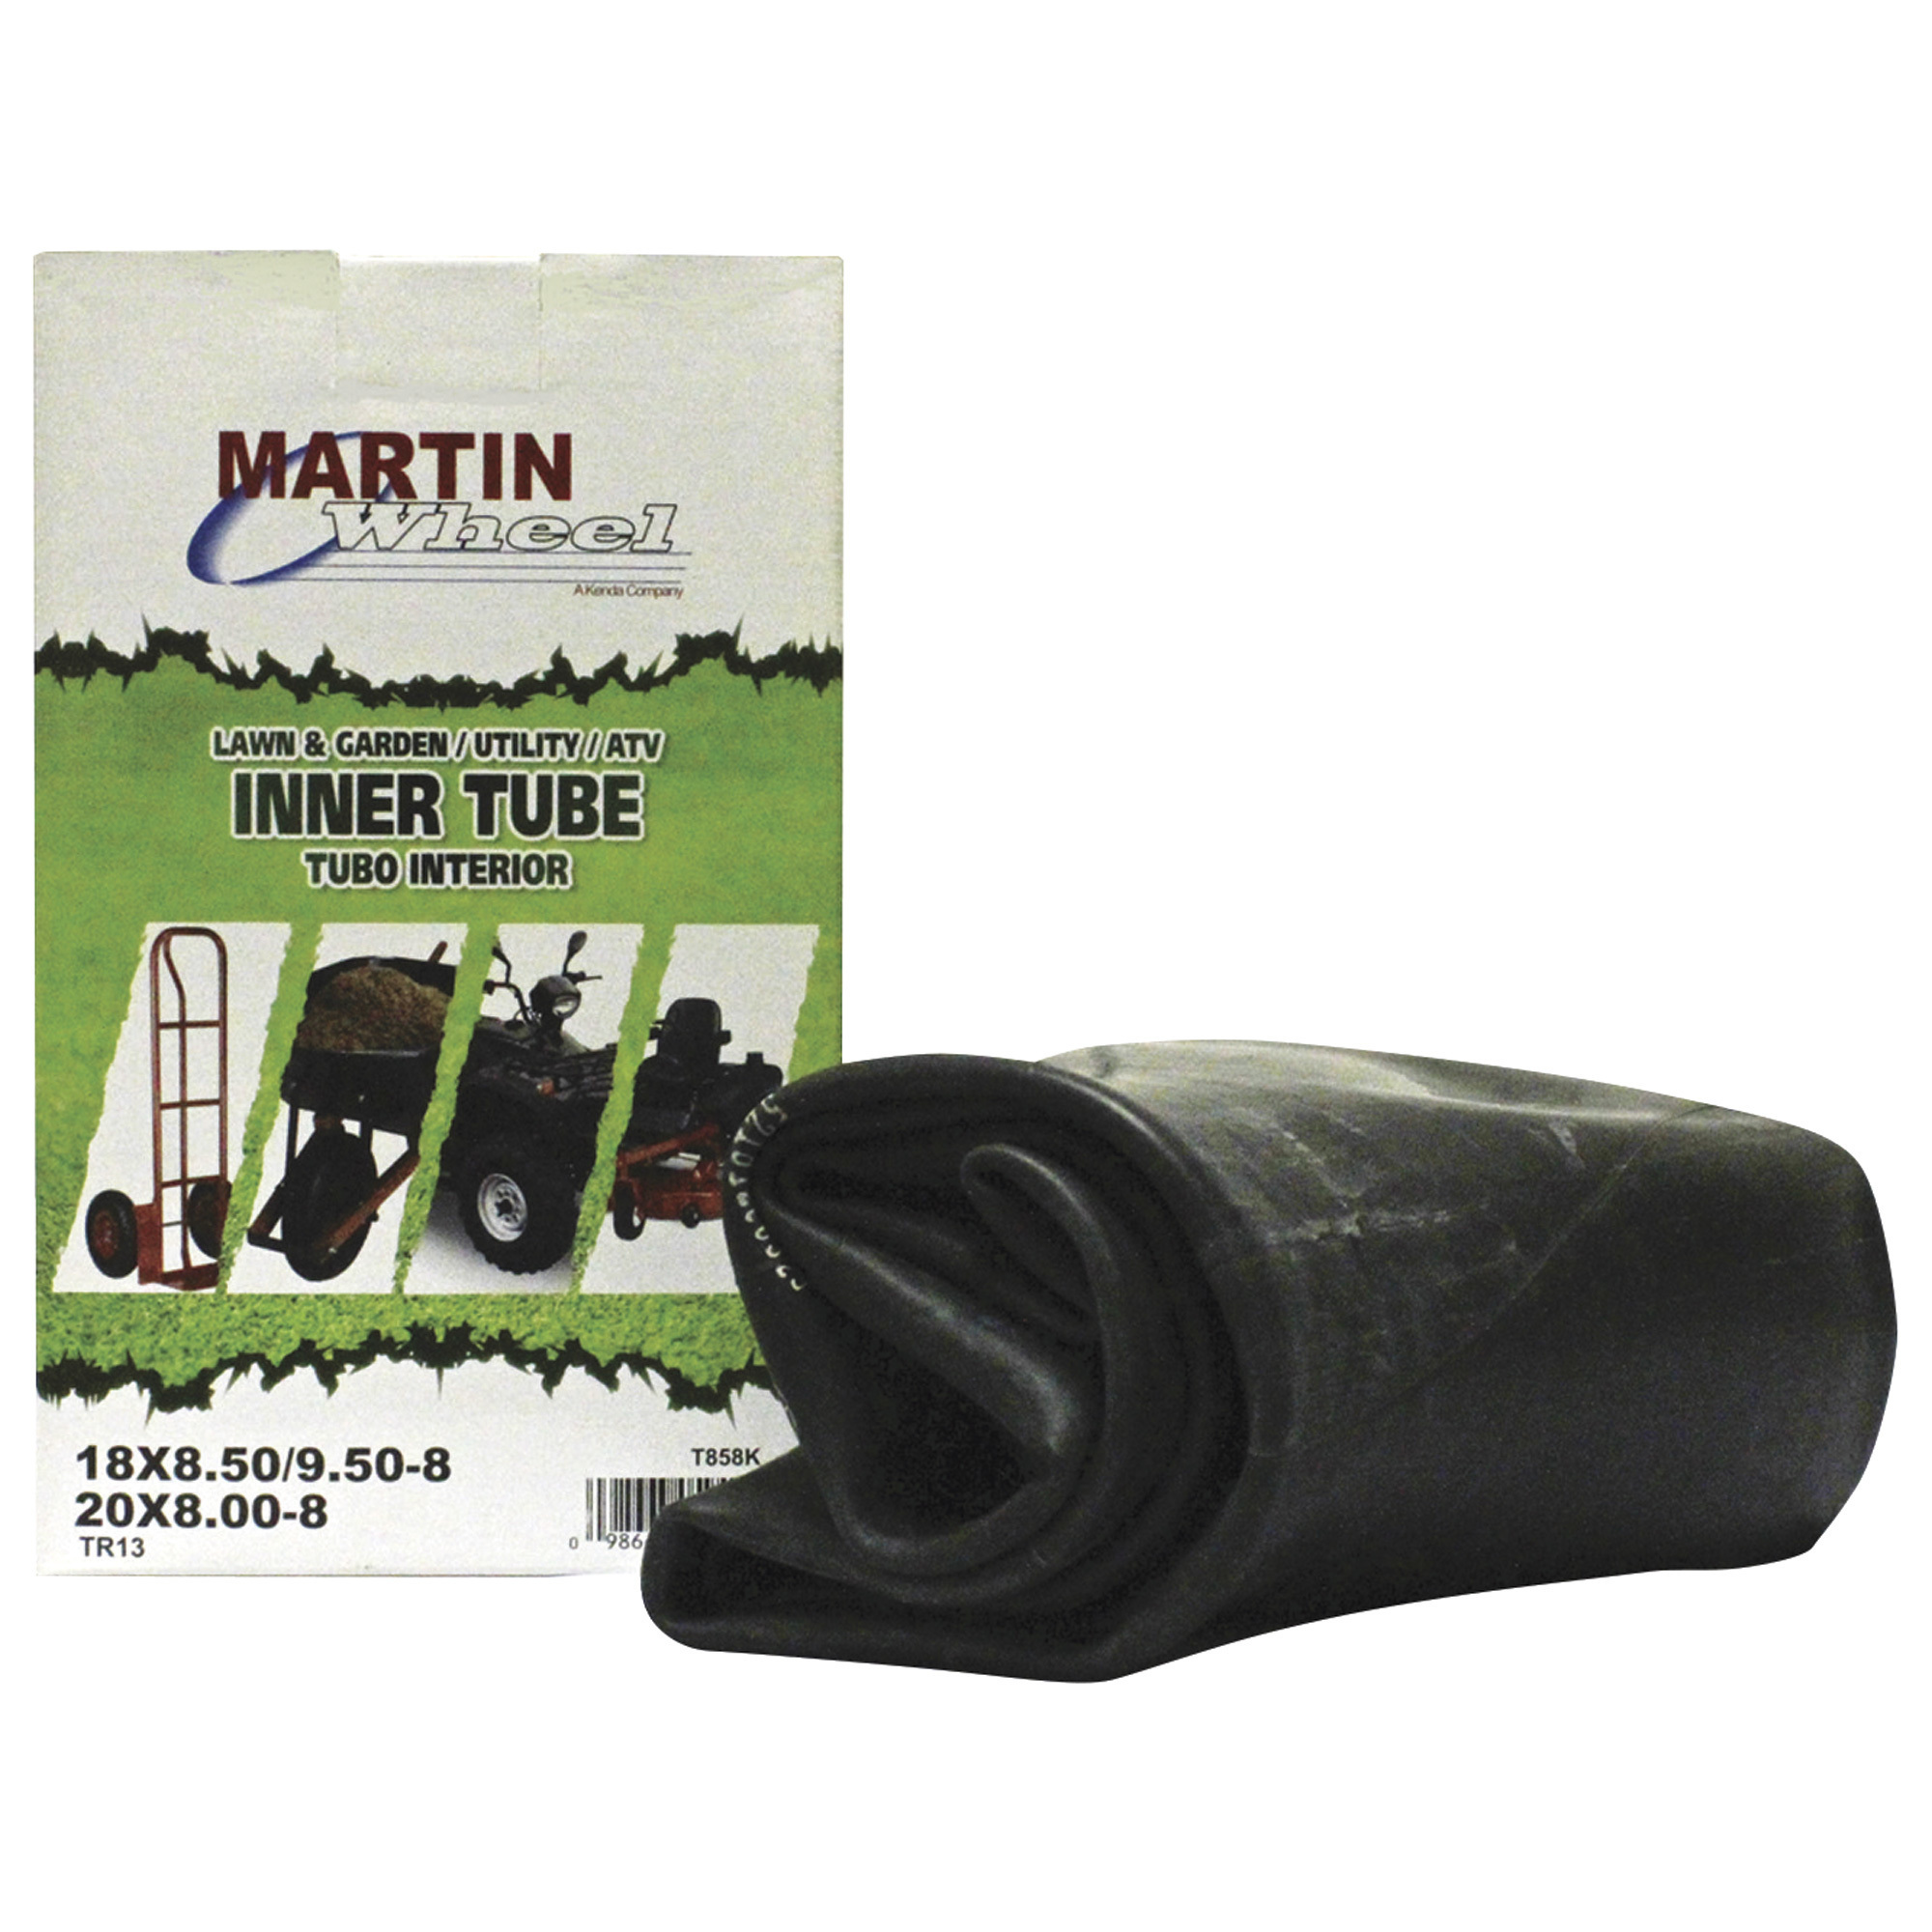 Martin Wheel Inner Tube with Straight Valve Stem â 18x850-8Inch, Fits 18x850/18x950/20x800-8Inch Tires, Model T858K